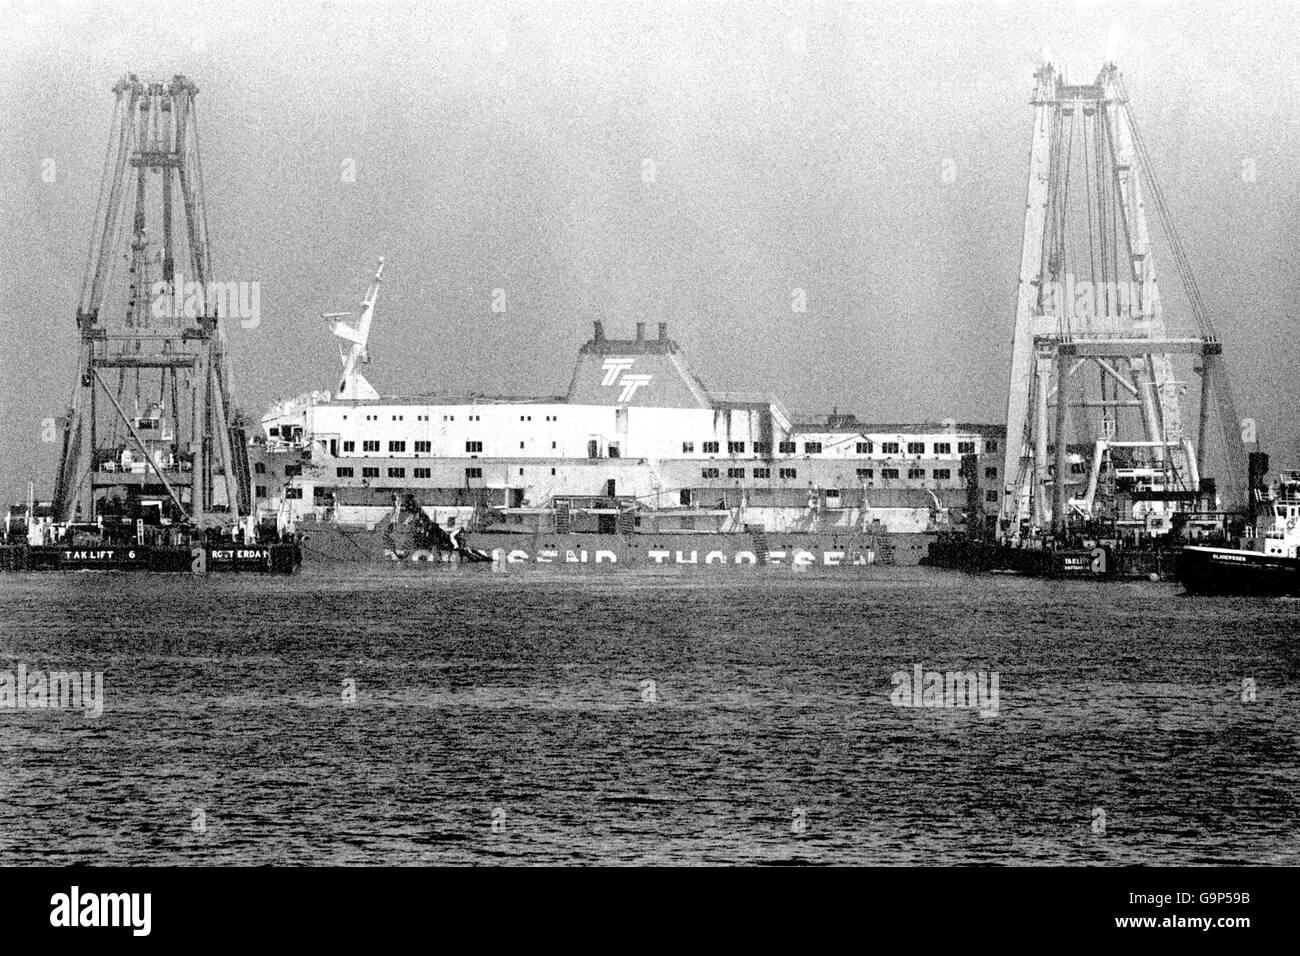 Der Herald of Free Enterpirse wird von zwei riesigen Lastkräne in den Hafen gezogen. Mehr als sieben Wochen nach der Fährkatastrophe kehrt das Schiff in den Hafen von Zeebrugge zurück. Stockfoto